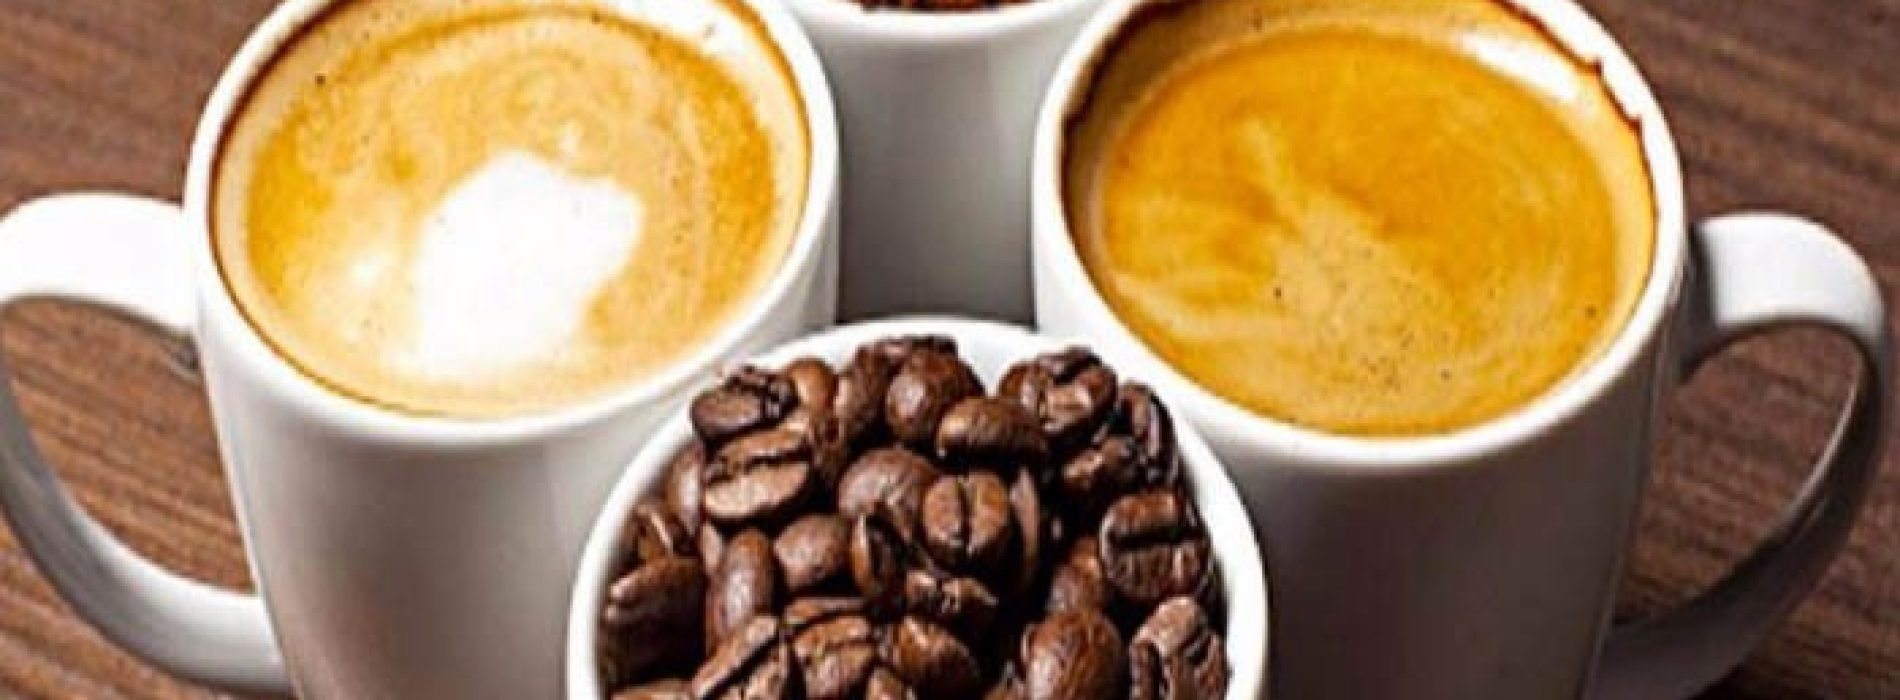 Wetenschap: Koffie is allergrootste bron van antioxidanten